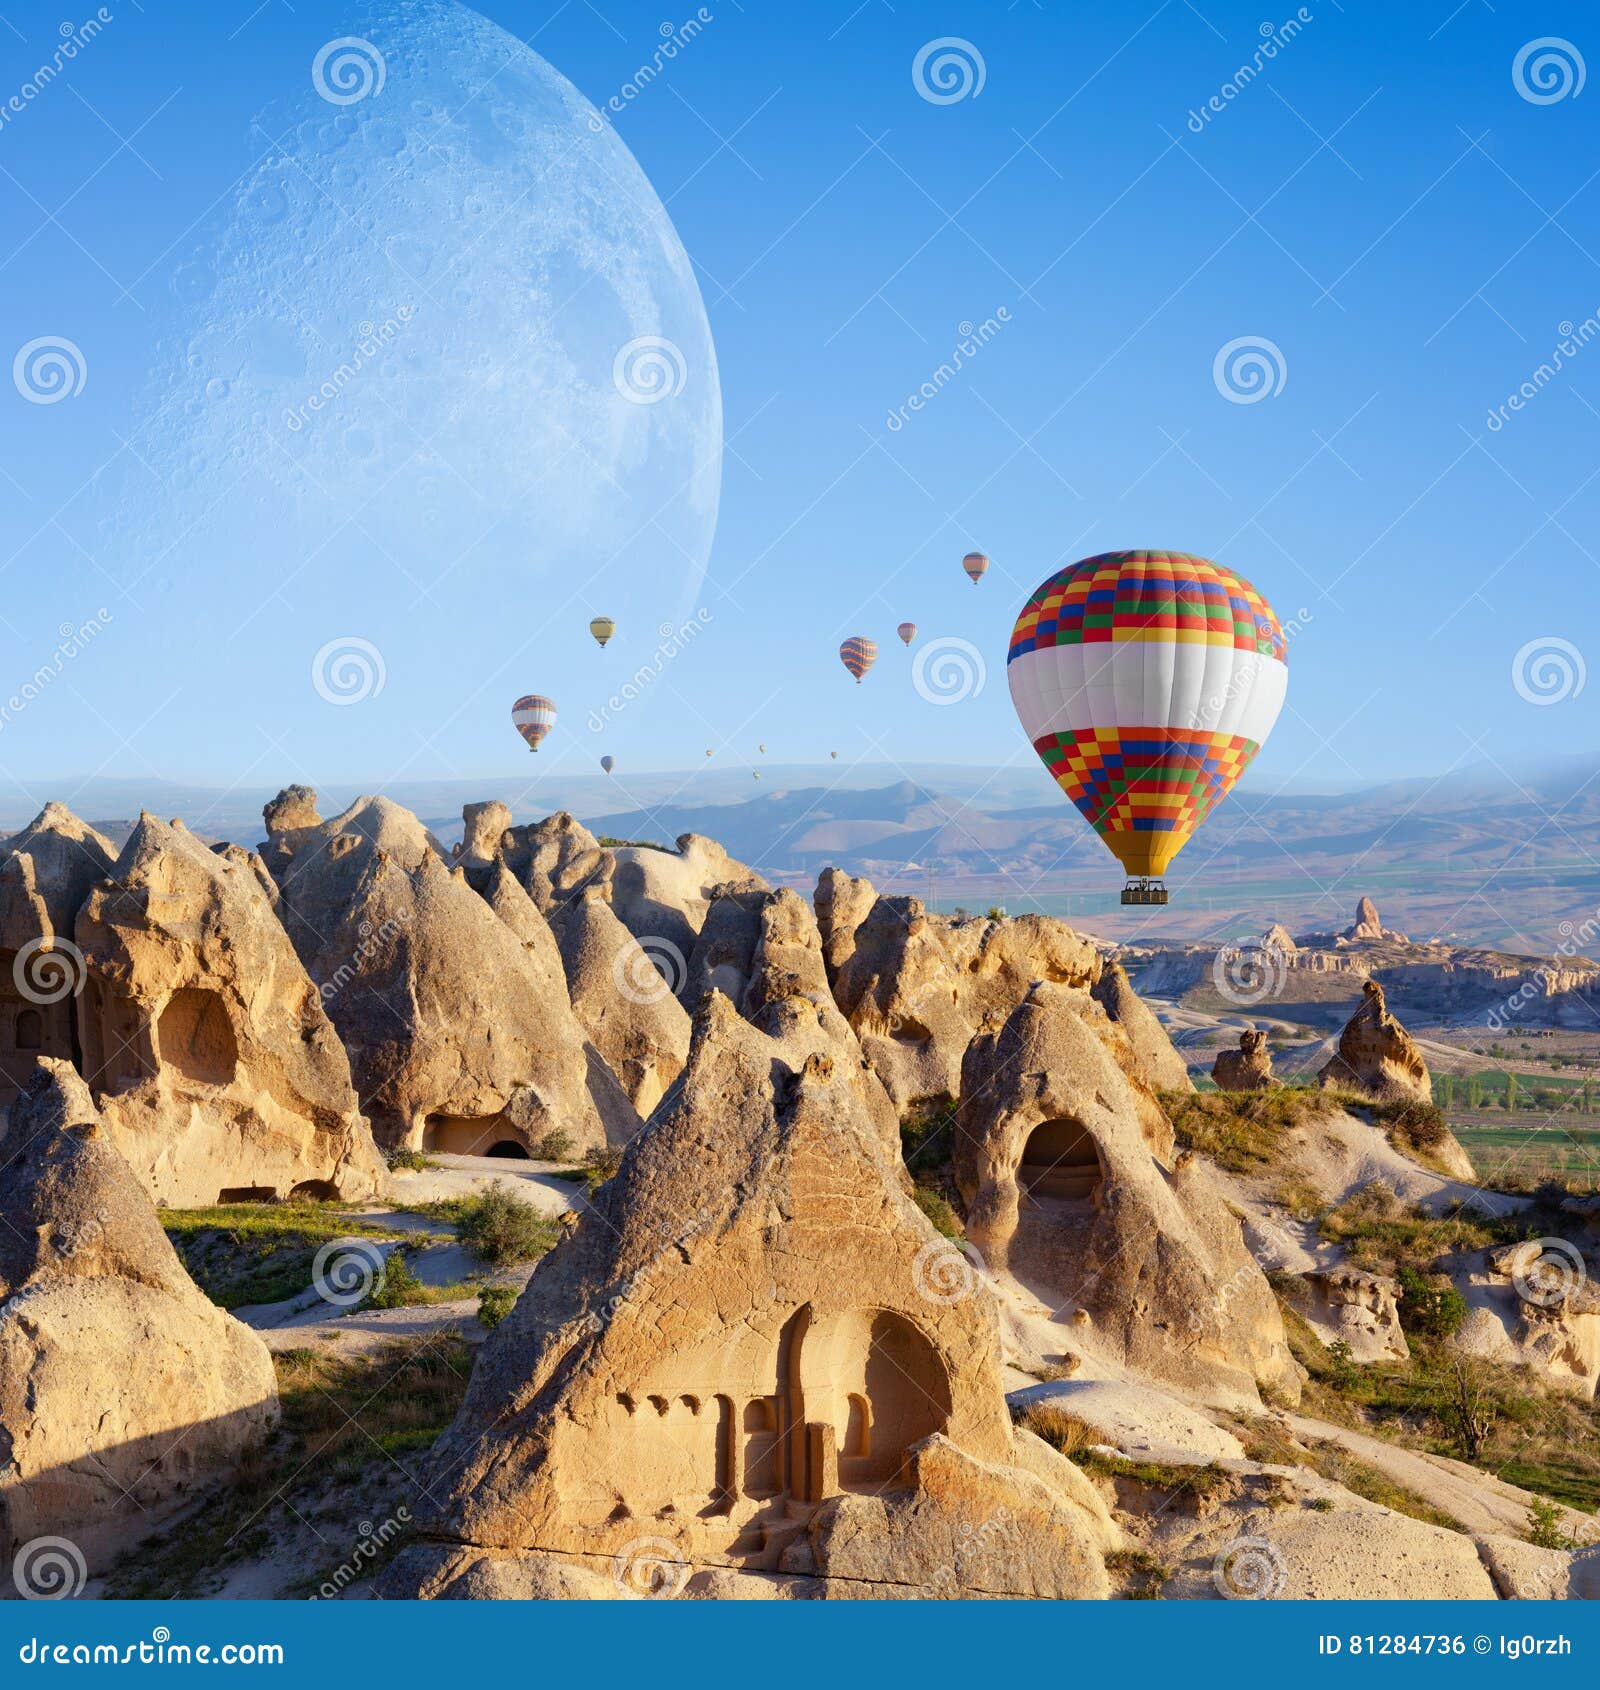 hot air ballooning in sunrise in cappadocia, turkey